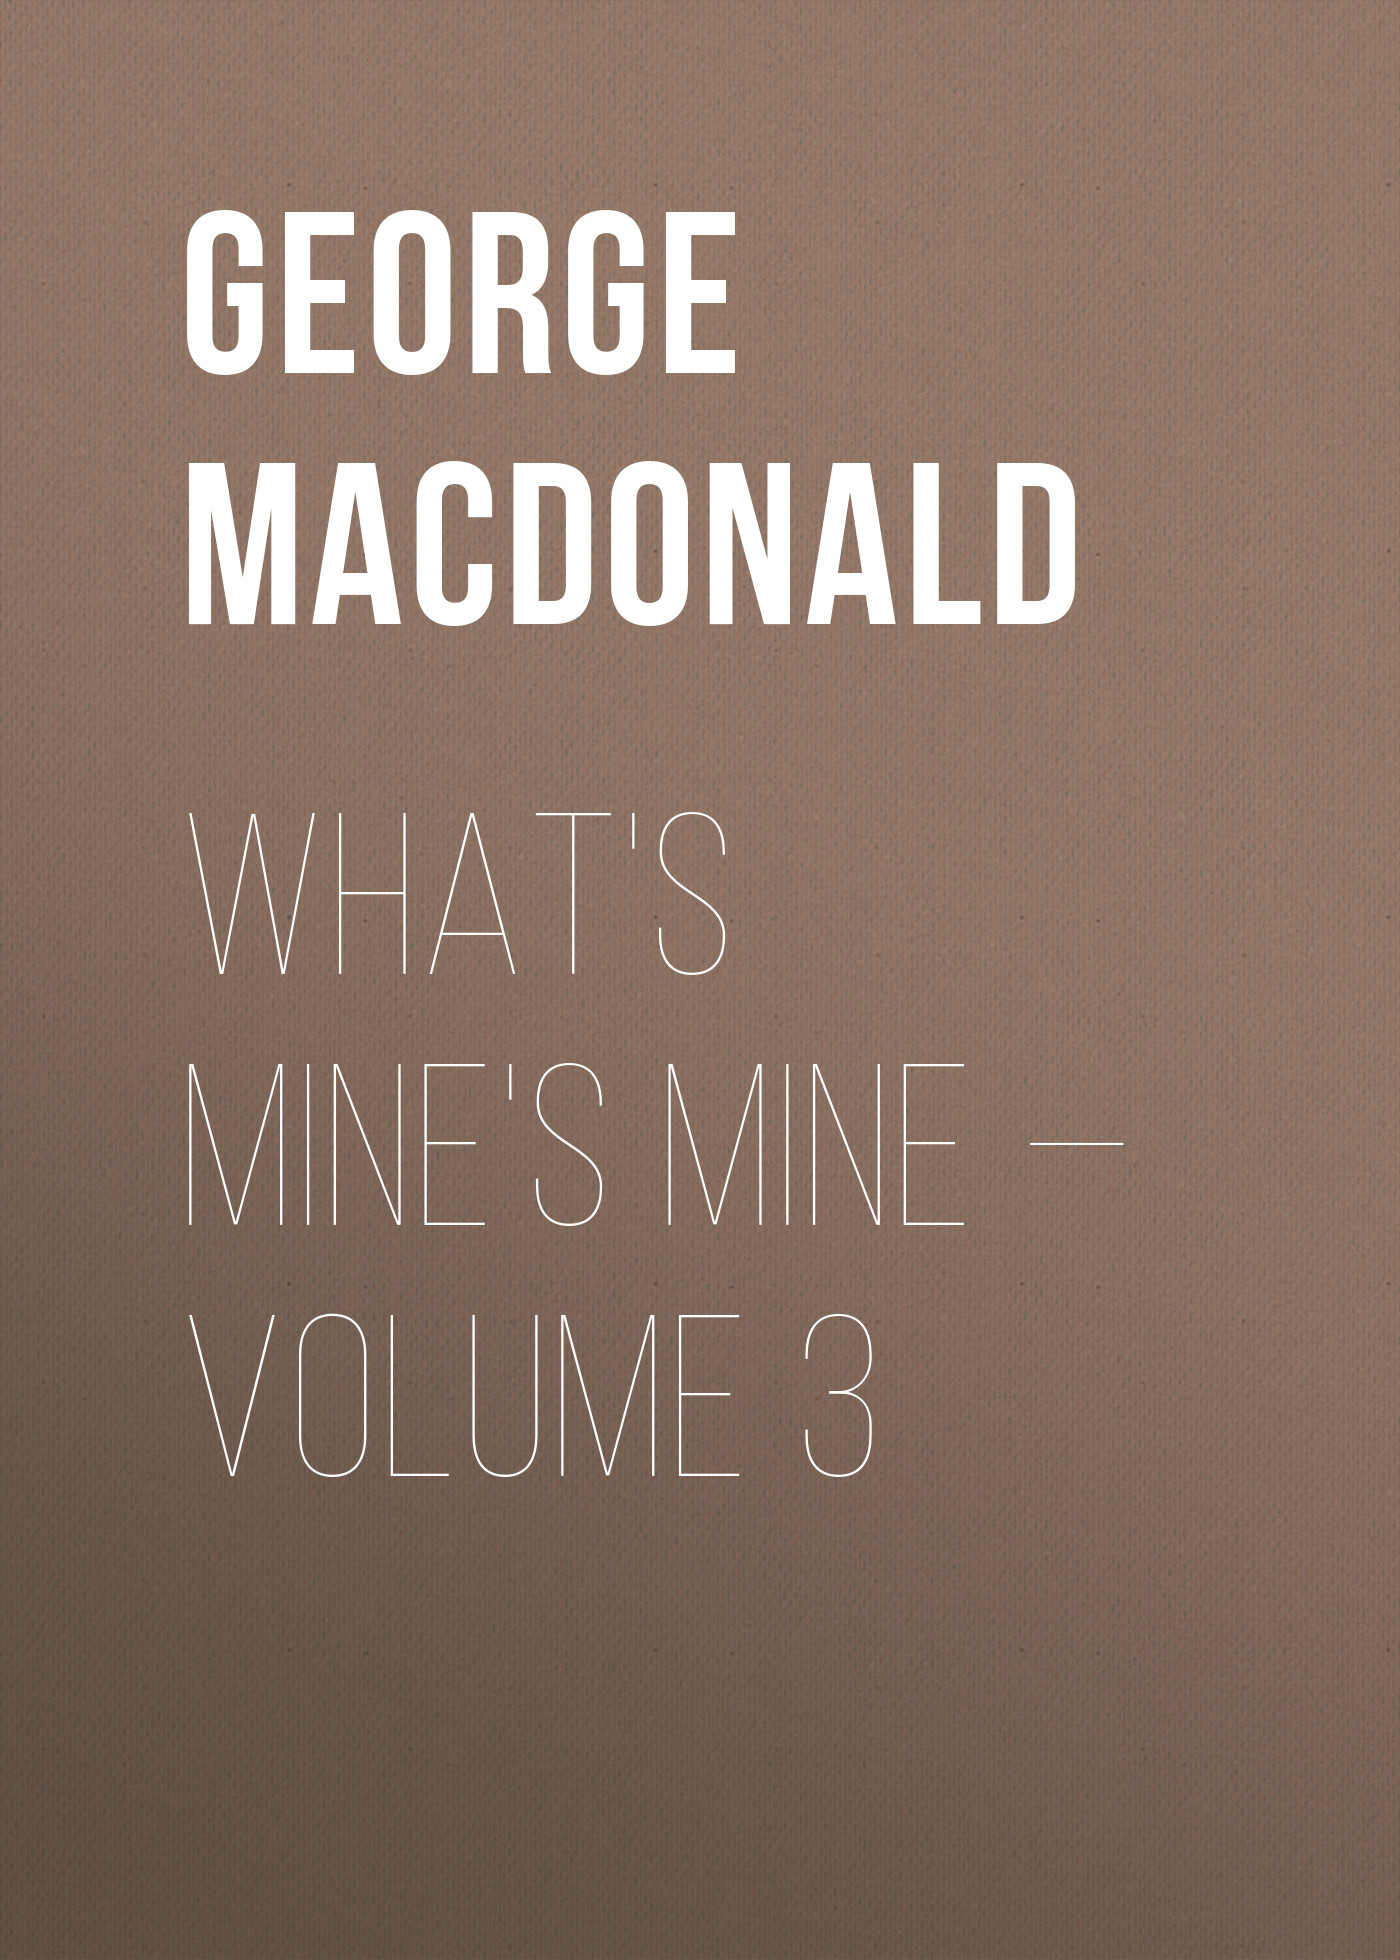 Книга What's Mine's Mine – Volume 3 из серии , созданная George MacDonald, может относится к жанру Зарубежная классика, Литература 19 века, Зарубежная старинная литература. Стоимость электронной книги What's Mine's Mine – Volume 3 с идентификатором 35008809 составляет 0 руб.